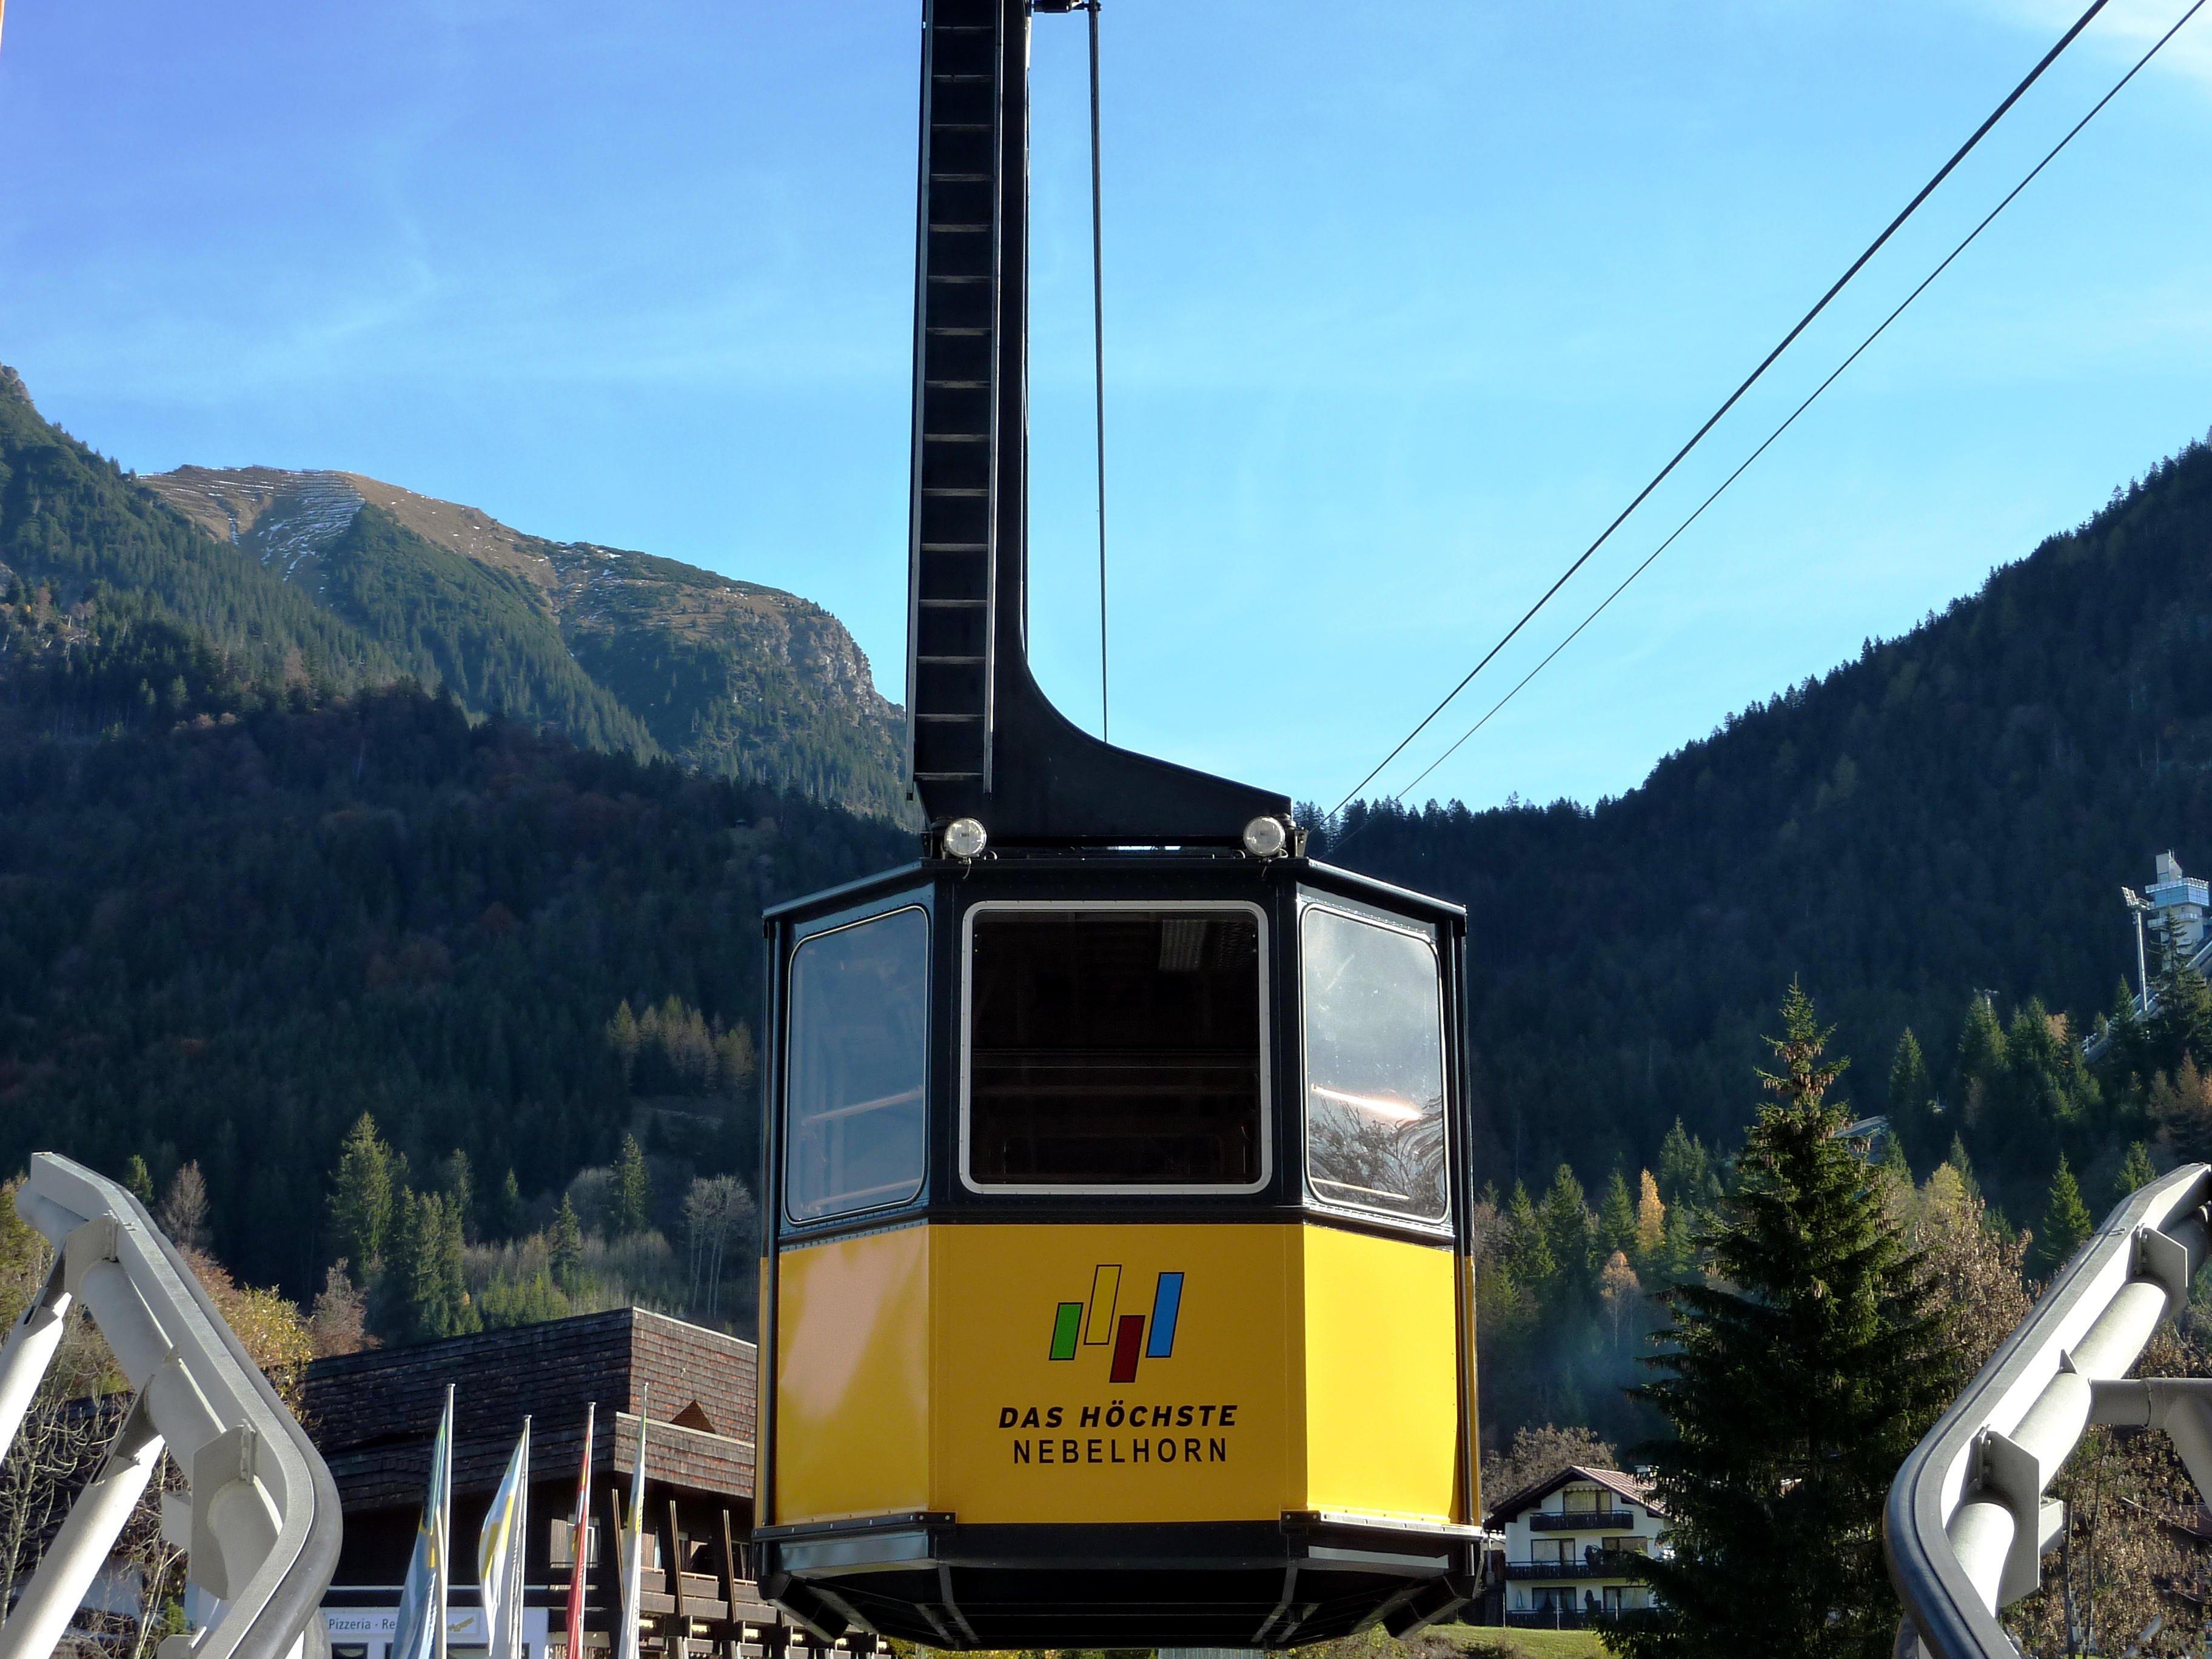 Die Nebelhornbahn geht am Freitag, 22.08.2016 gegen Mittag wieder in Betrieb.